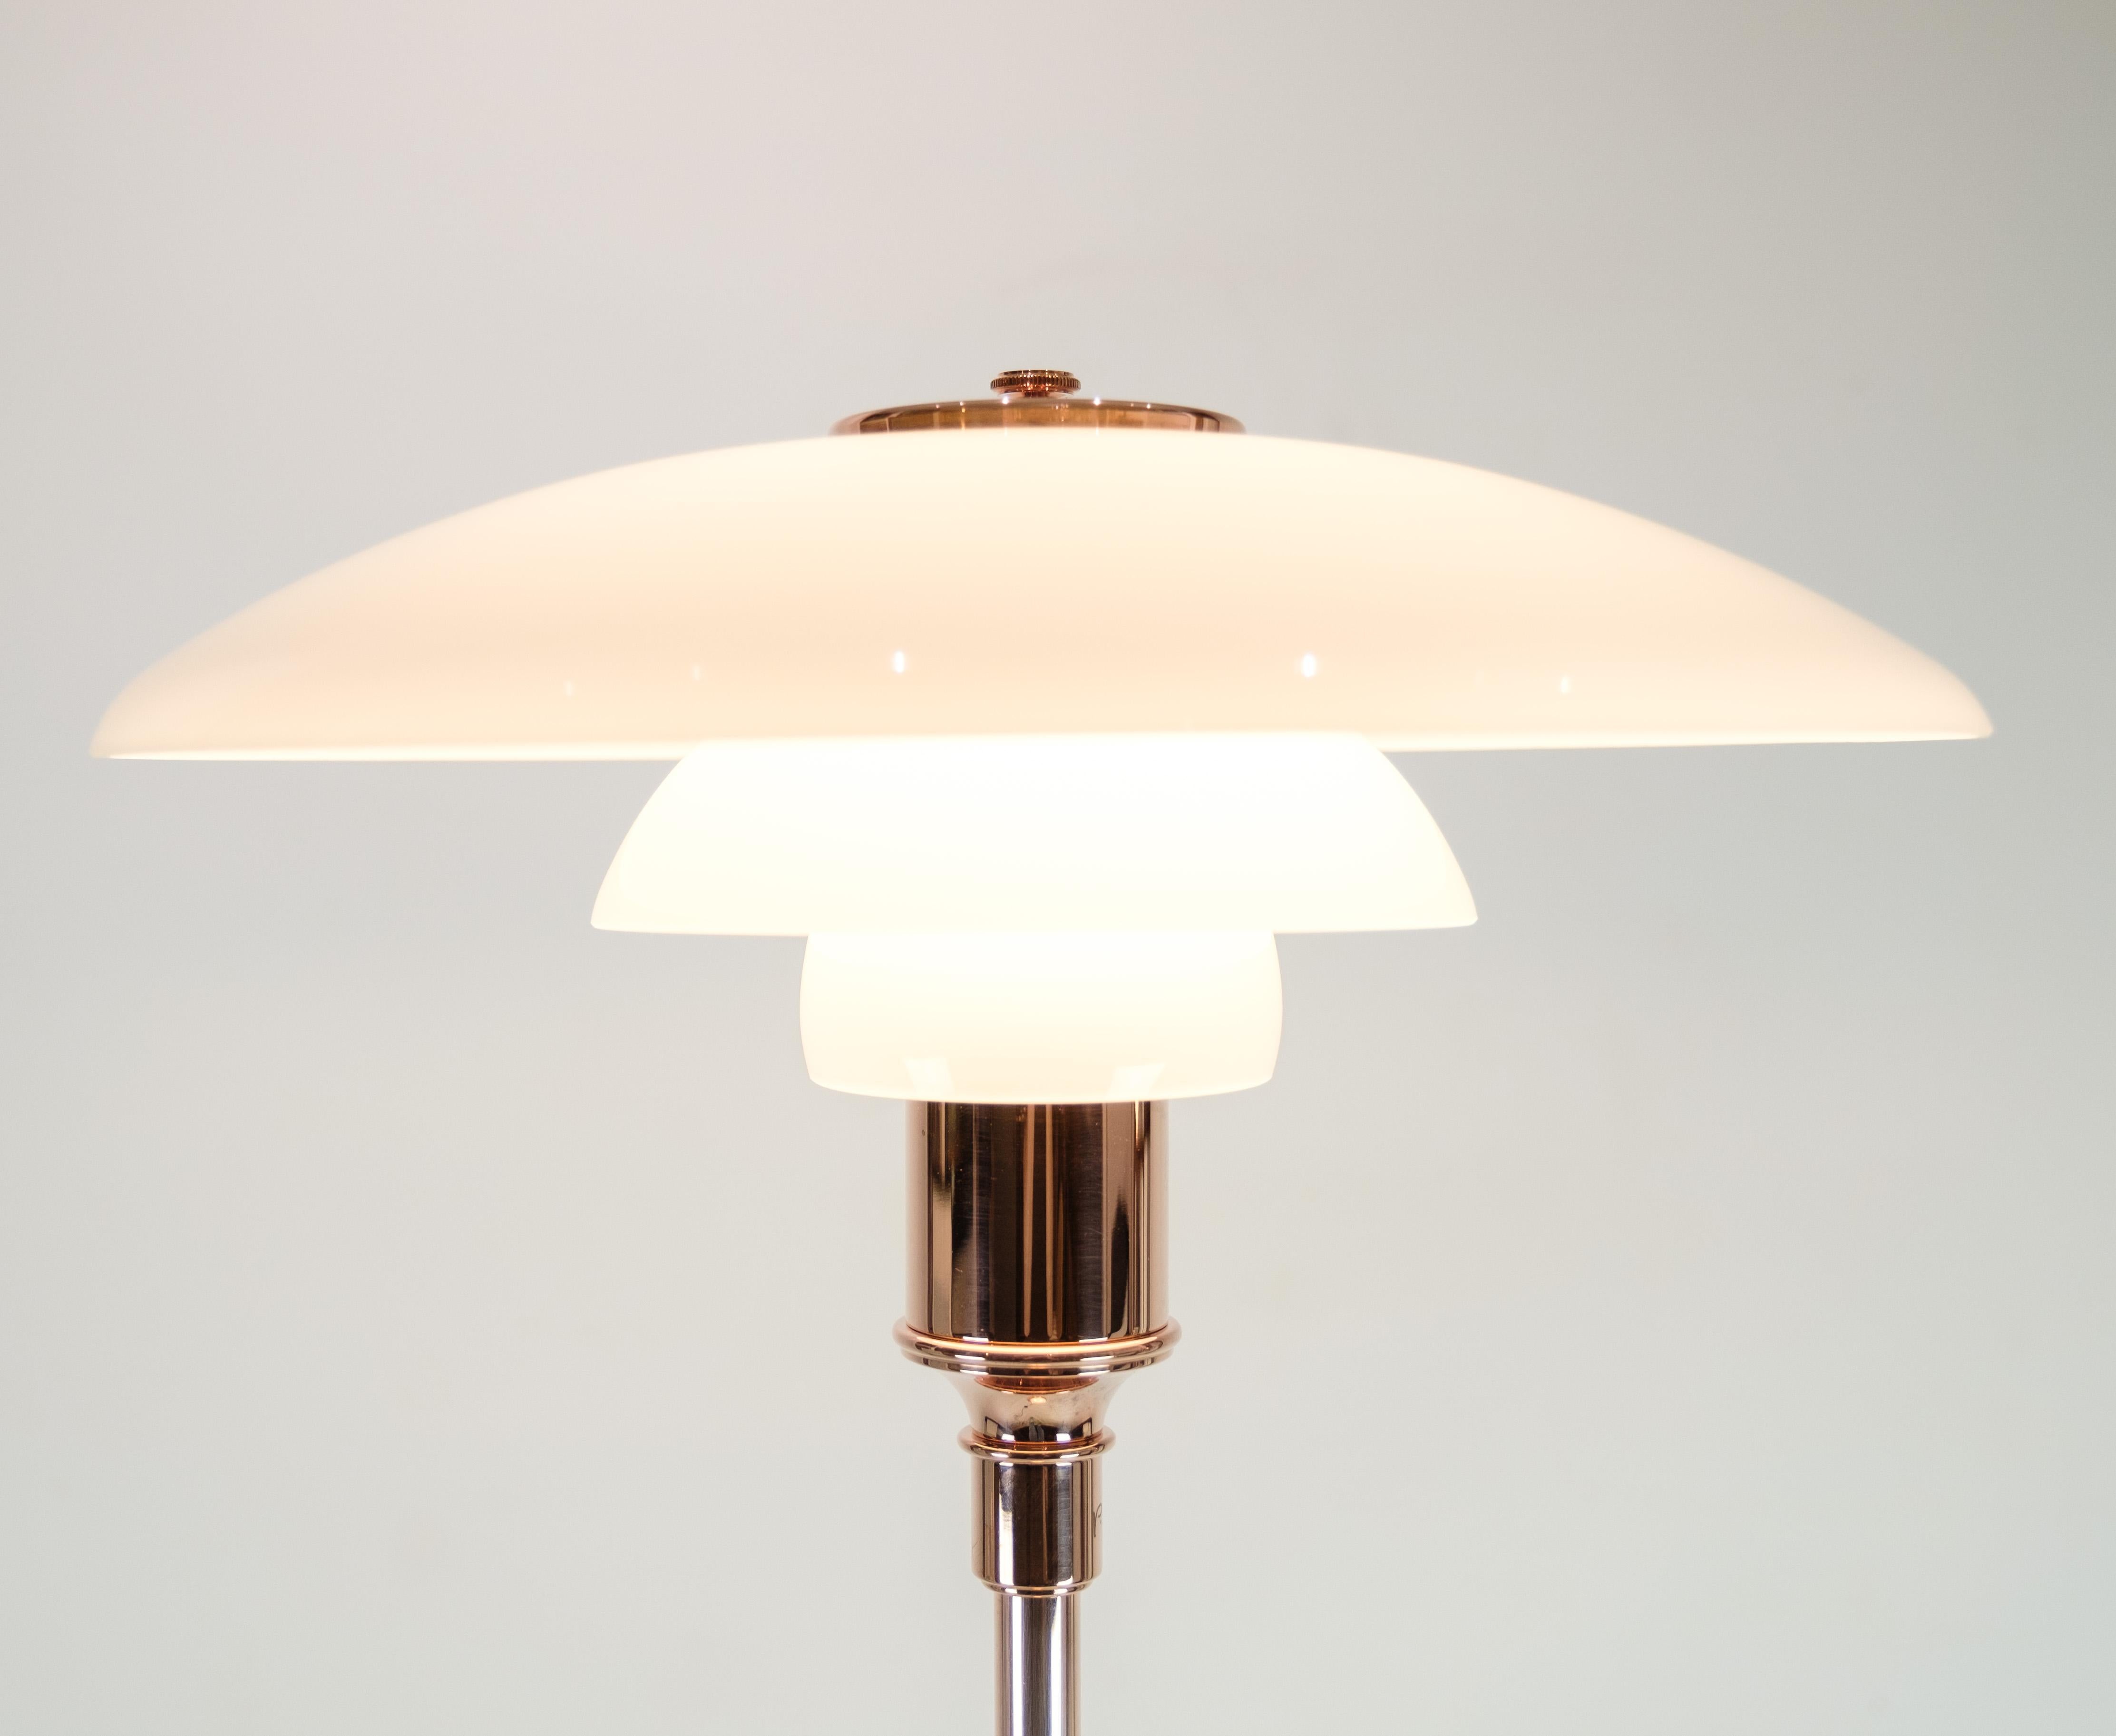 PH Stehleuchte, Modell PH3½-2½, limitierte Auflage in Kupfer, entworfen von Poul Henningsen und hergestellt von Louis Poulsen. Die Lampe hat drei Schirme aus weißem Opalglas. Die Lampe wurde nur zwischen dem 1. Oktober und dem 31. Dezember 2016